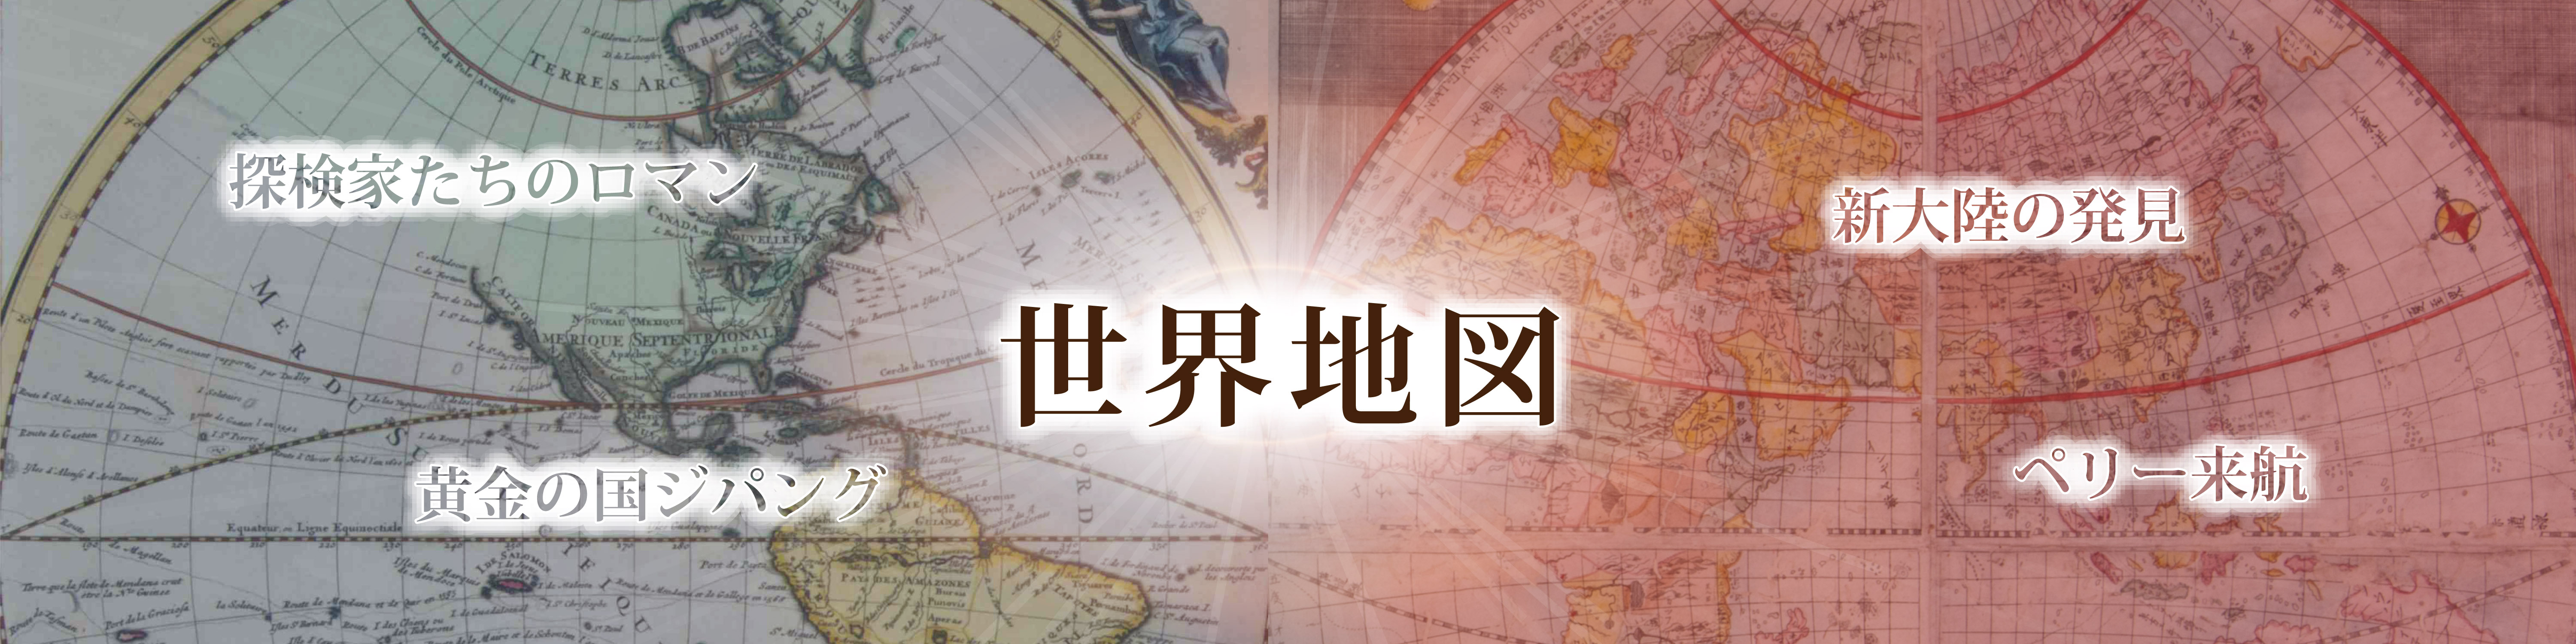 「守屋壽コレクションにみる　西洋の古地図と日本」バナー